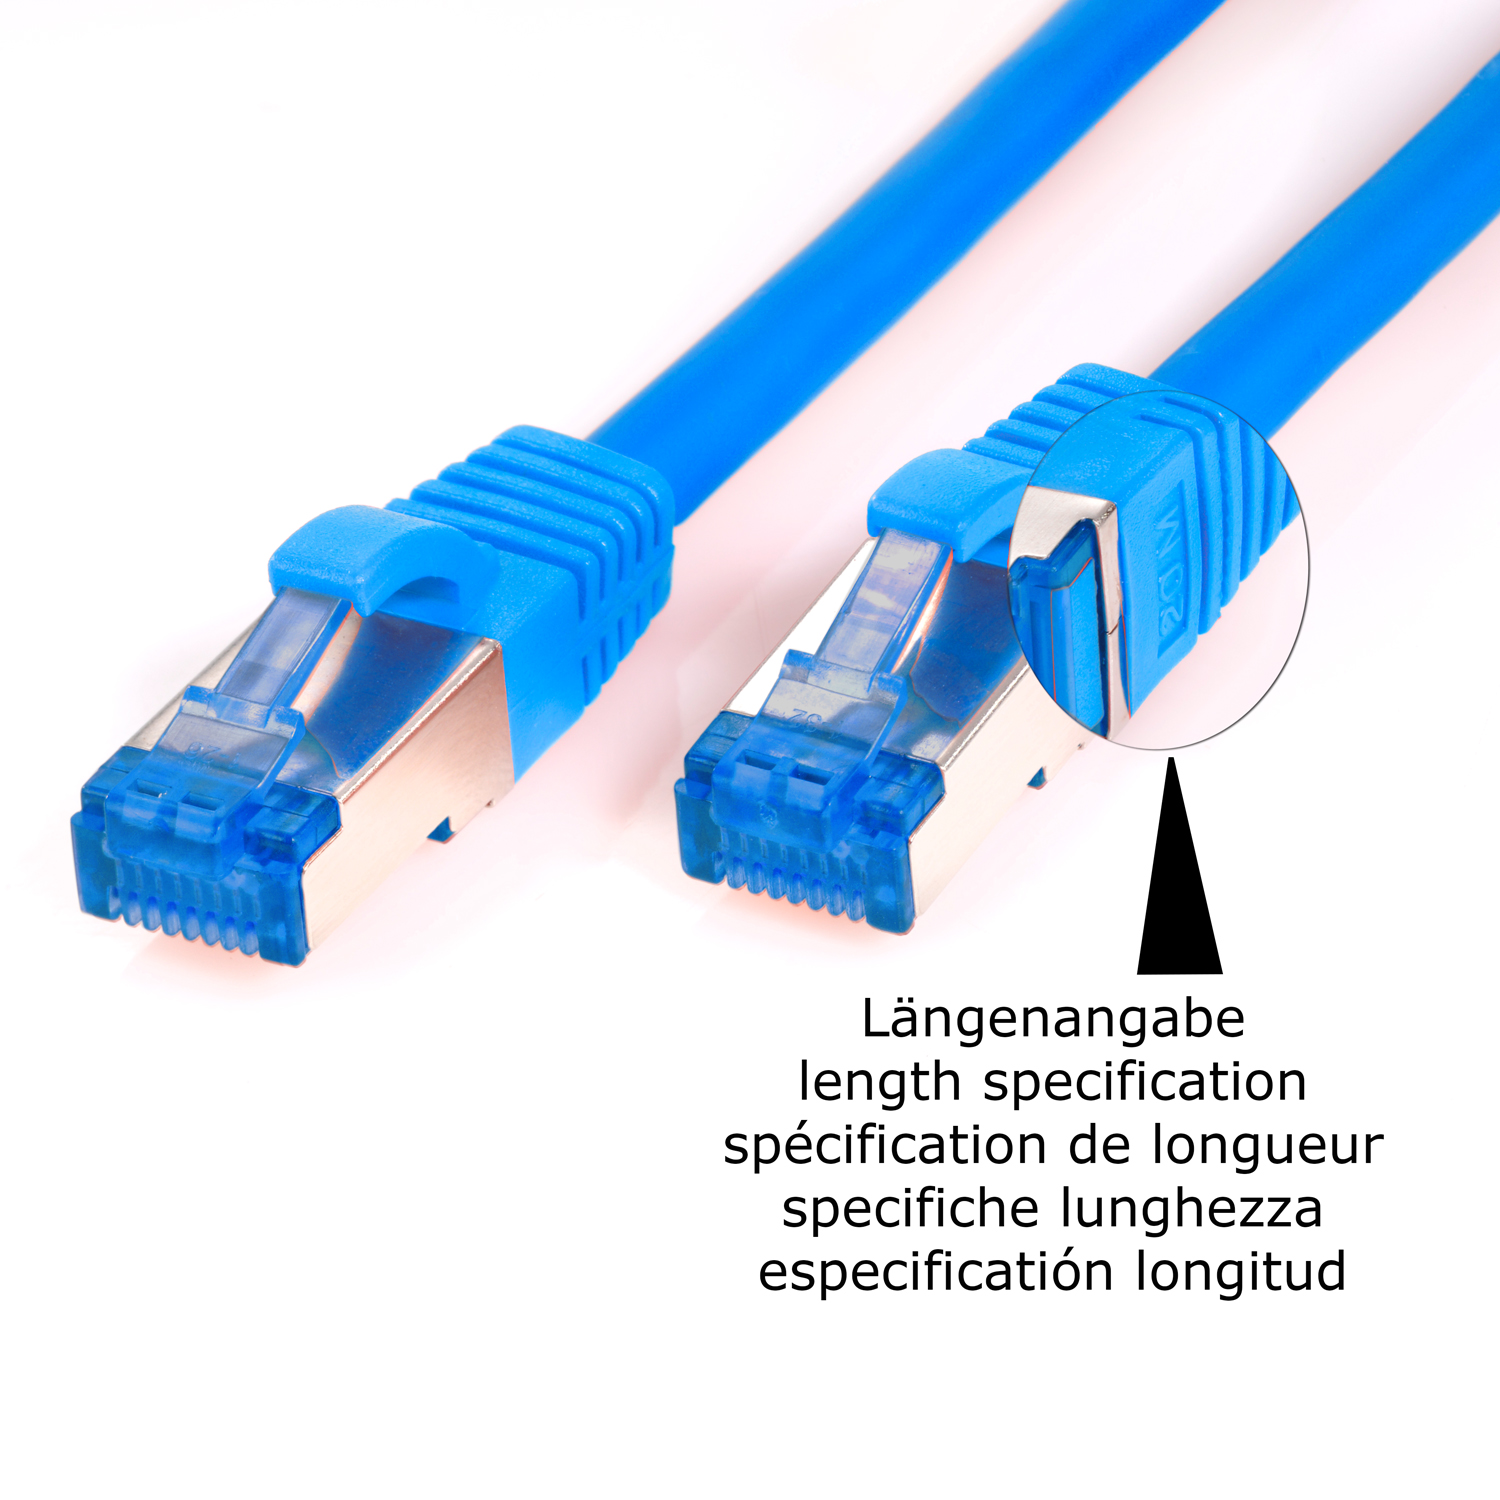 TPFNET 5er 2 m 10GBit, S/FTP Netzwerkkabel, Pack 2m Netzwerkkabel Patchkabel / blau,